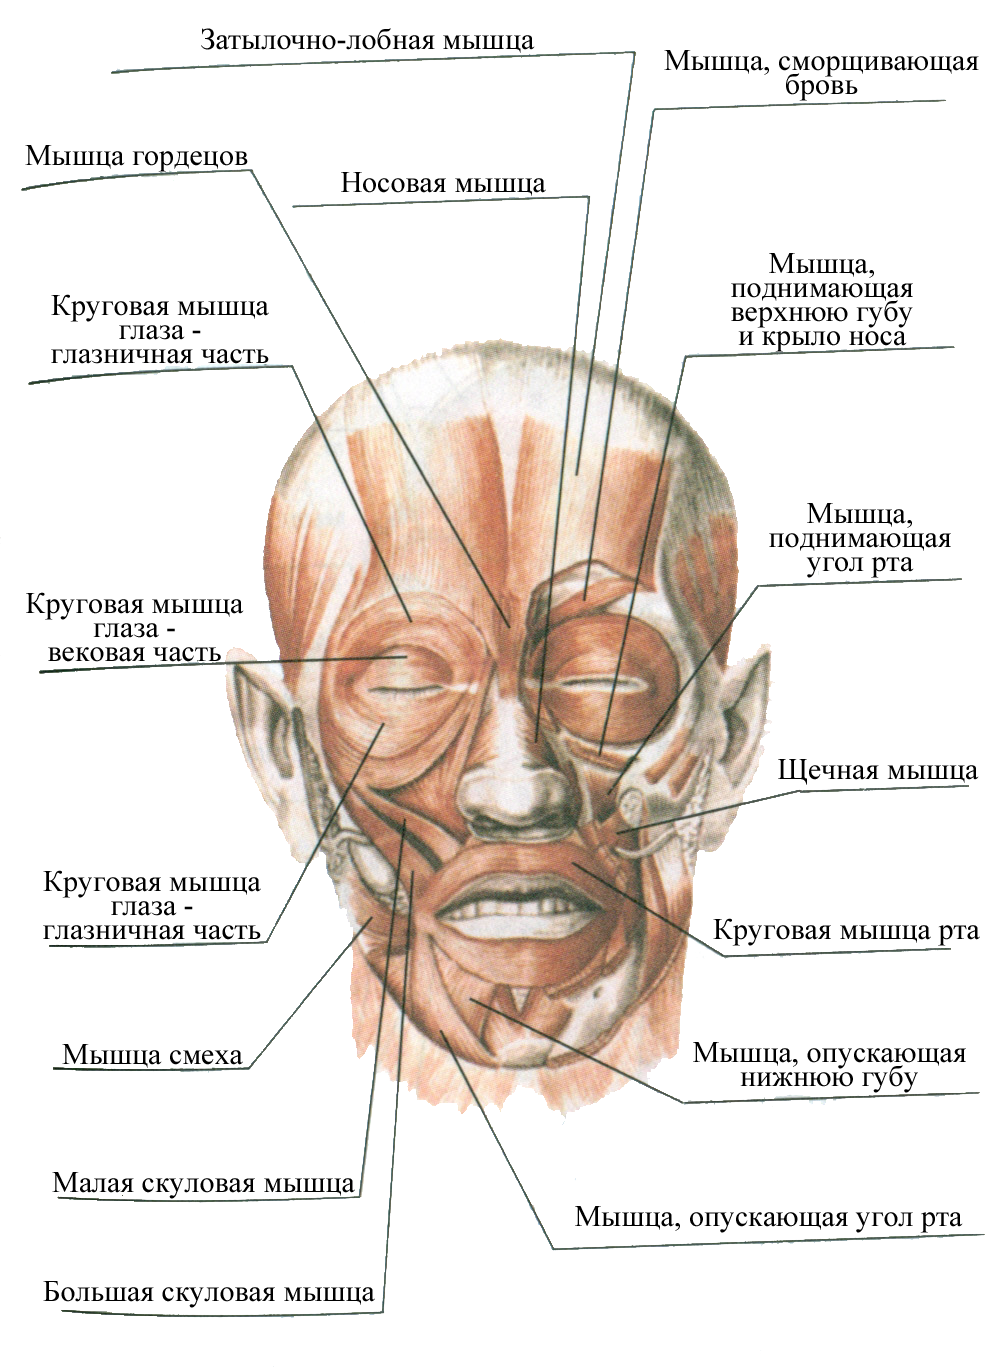 Нервы лицевой области. Мышцы лица анатомия функции. Мышцы лица топографическая анатомия. Жевательная и мимическая мускулатура челюстно-лицевой области. Мышечный аппарат челюстно-лицевой области.